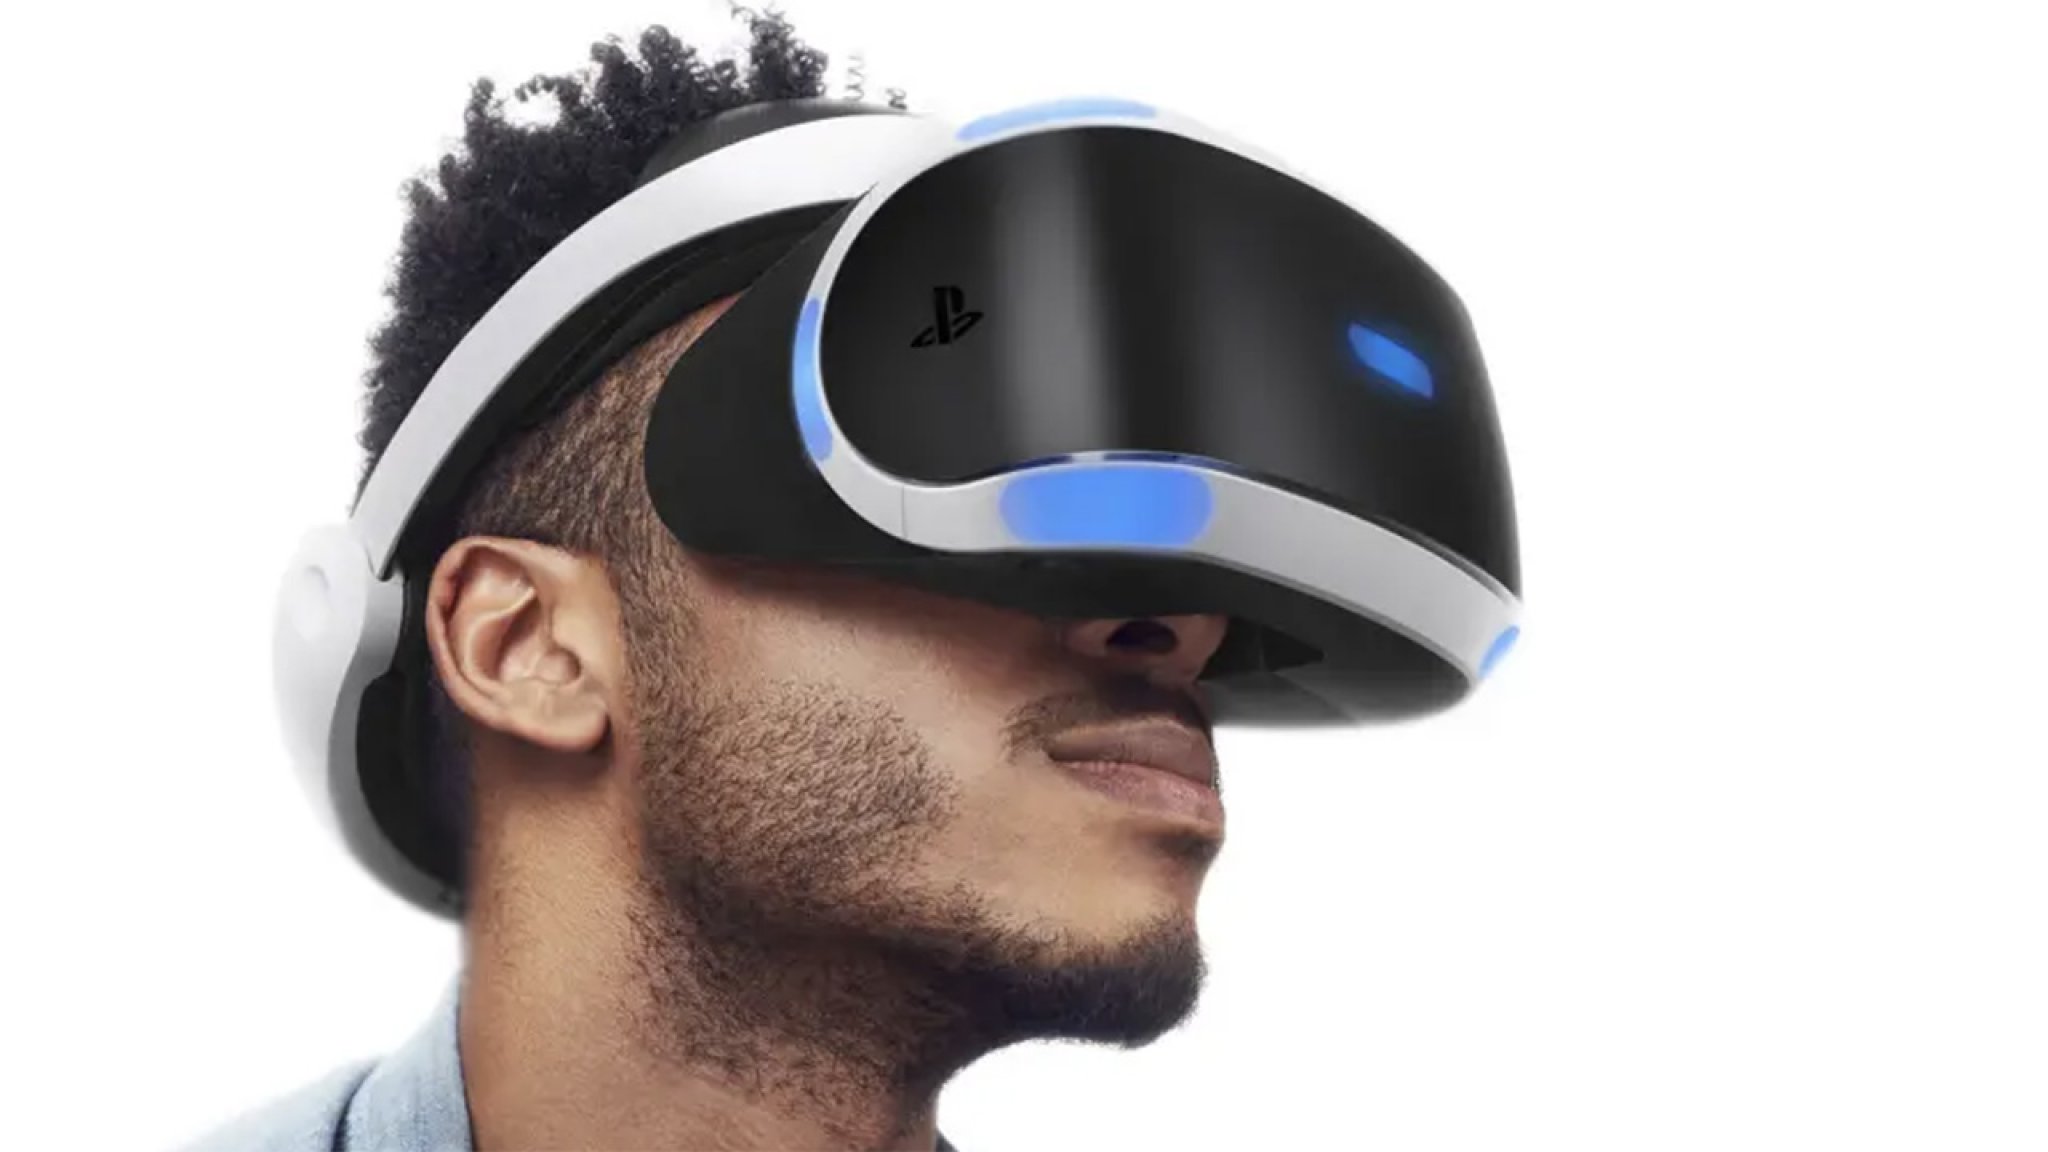 "Next-gen PlayStation VR wordt gigantische upgrade met 4K display"